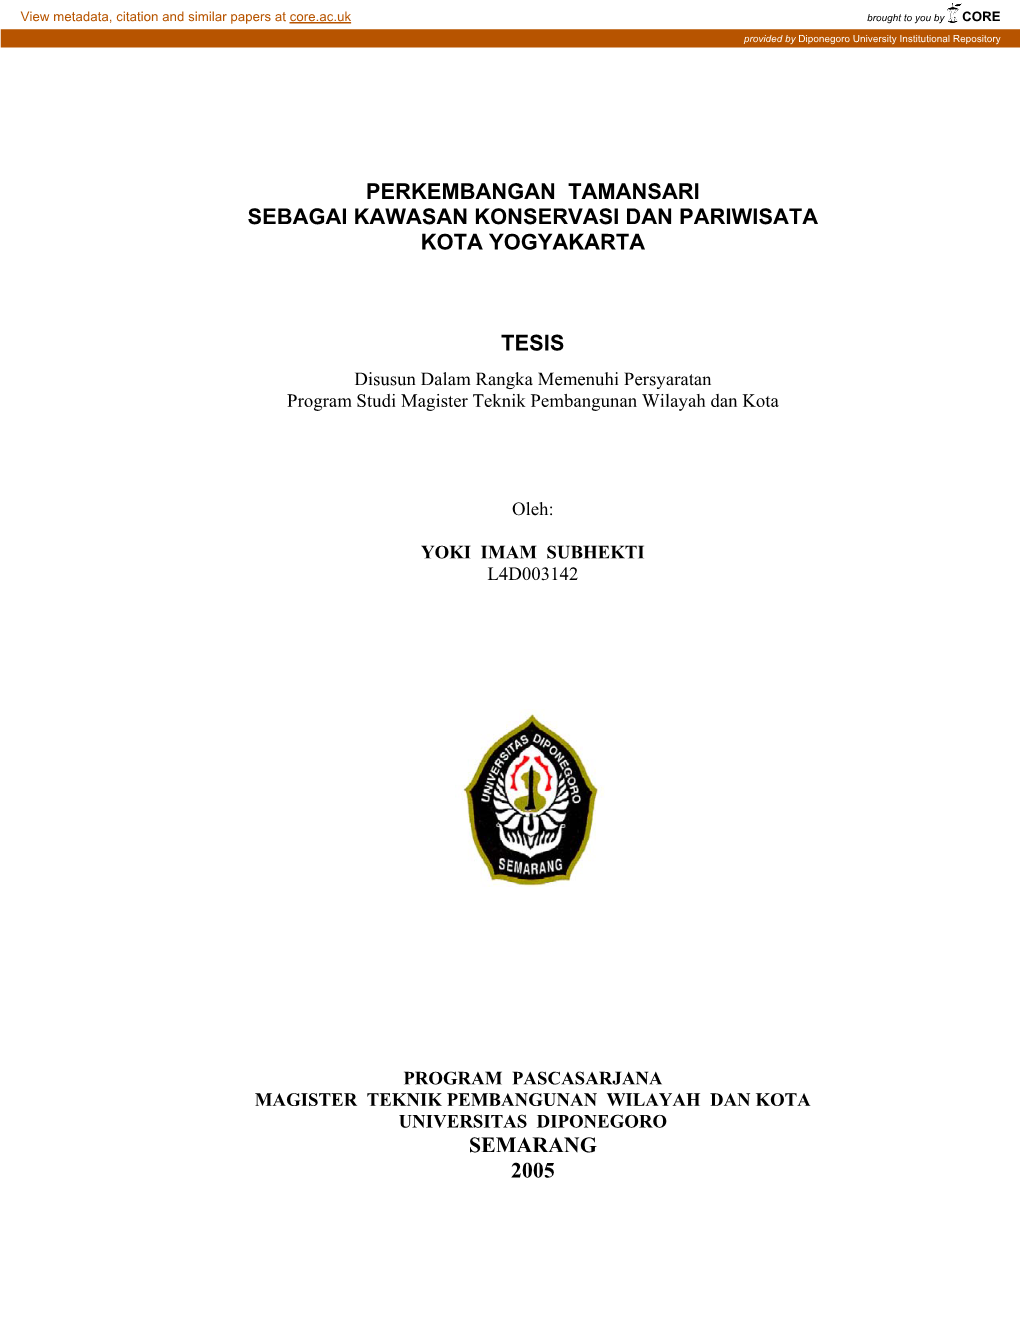 Perkembangan Tamansari Sebagai Kawasan Konservasi Dan Pariwisata Kota Yogyakarta